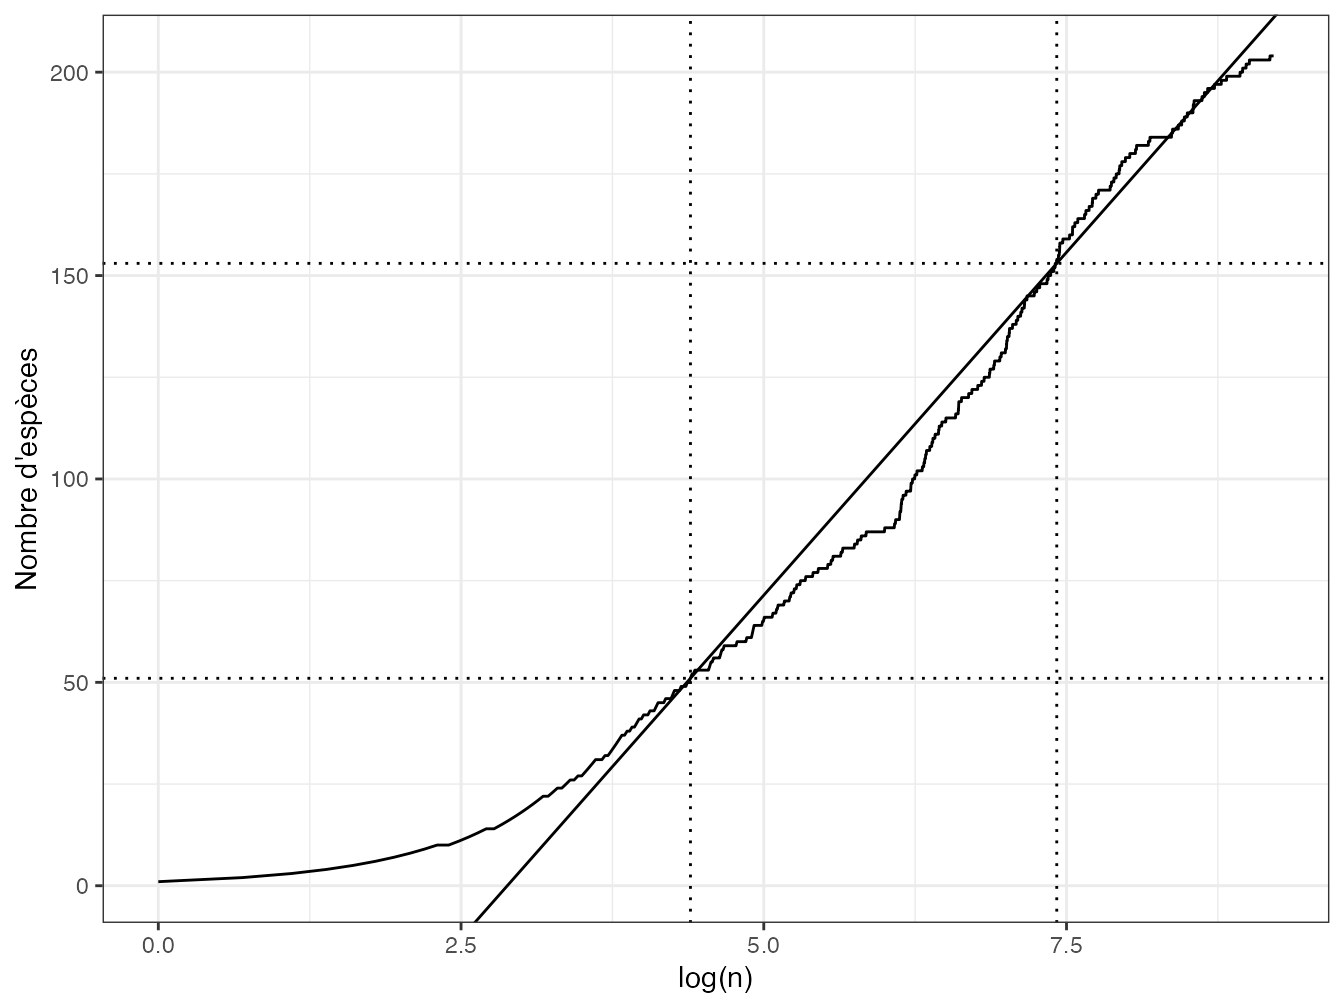 SAC d’un inventaire simulé de 10000 arbres de BCI. Le nombre d’espèces cumulé est tracé en fonction du logarithme du nombre d’individus échantillonnés. \(Q\) est la pente de la droite passant par les points de la courbe correspondant aux premier et troisième quartiles du nombre d’espèces.